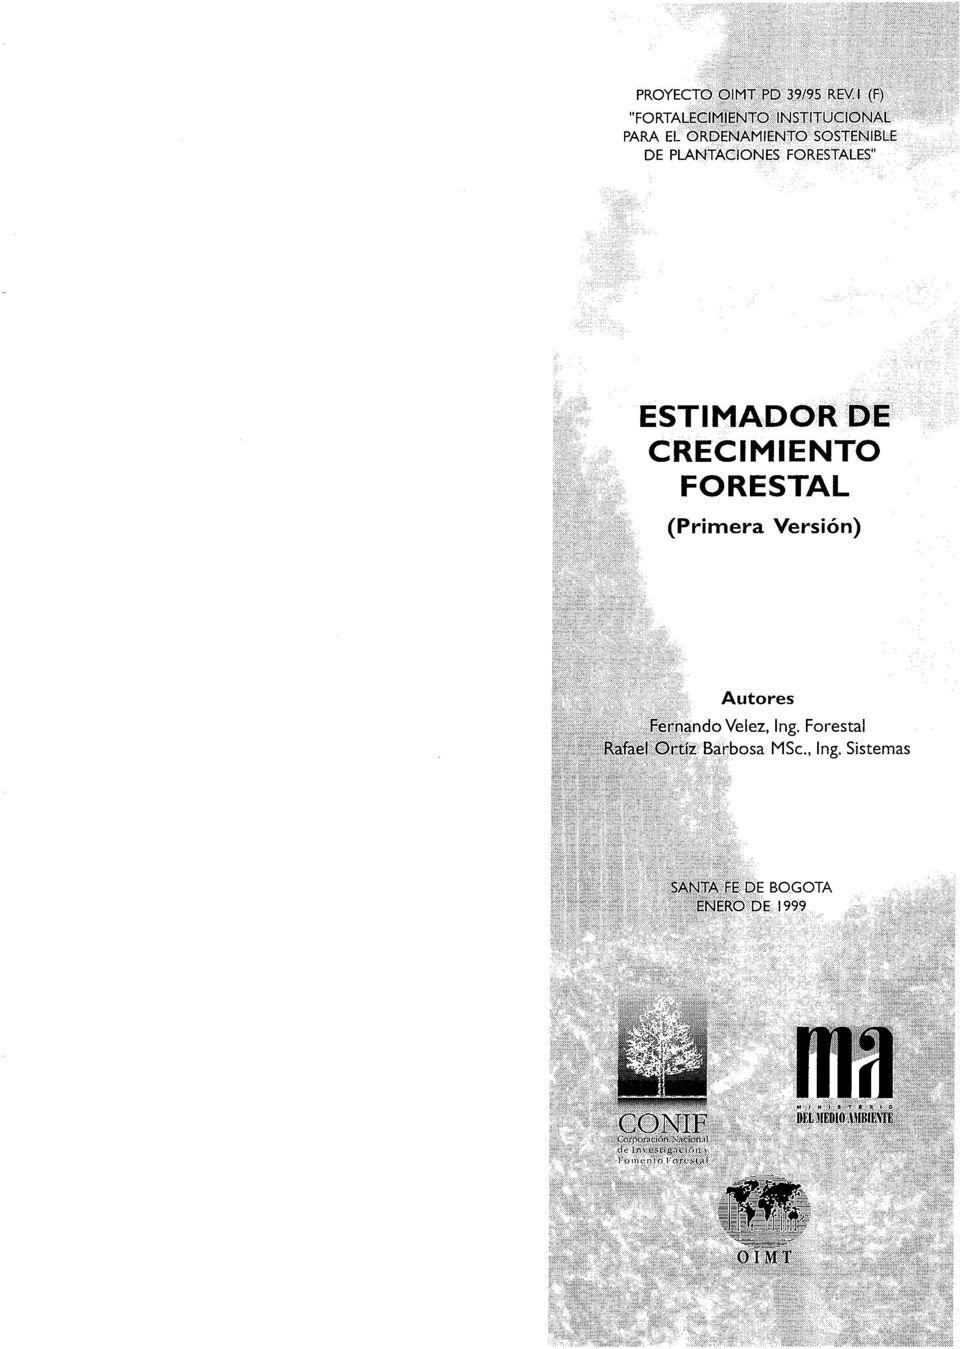 PLANTACIONES FORESTALES" ESTIMADOR DE CRECIMIENTO